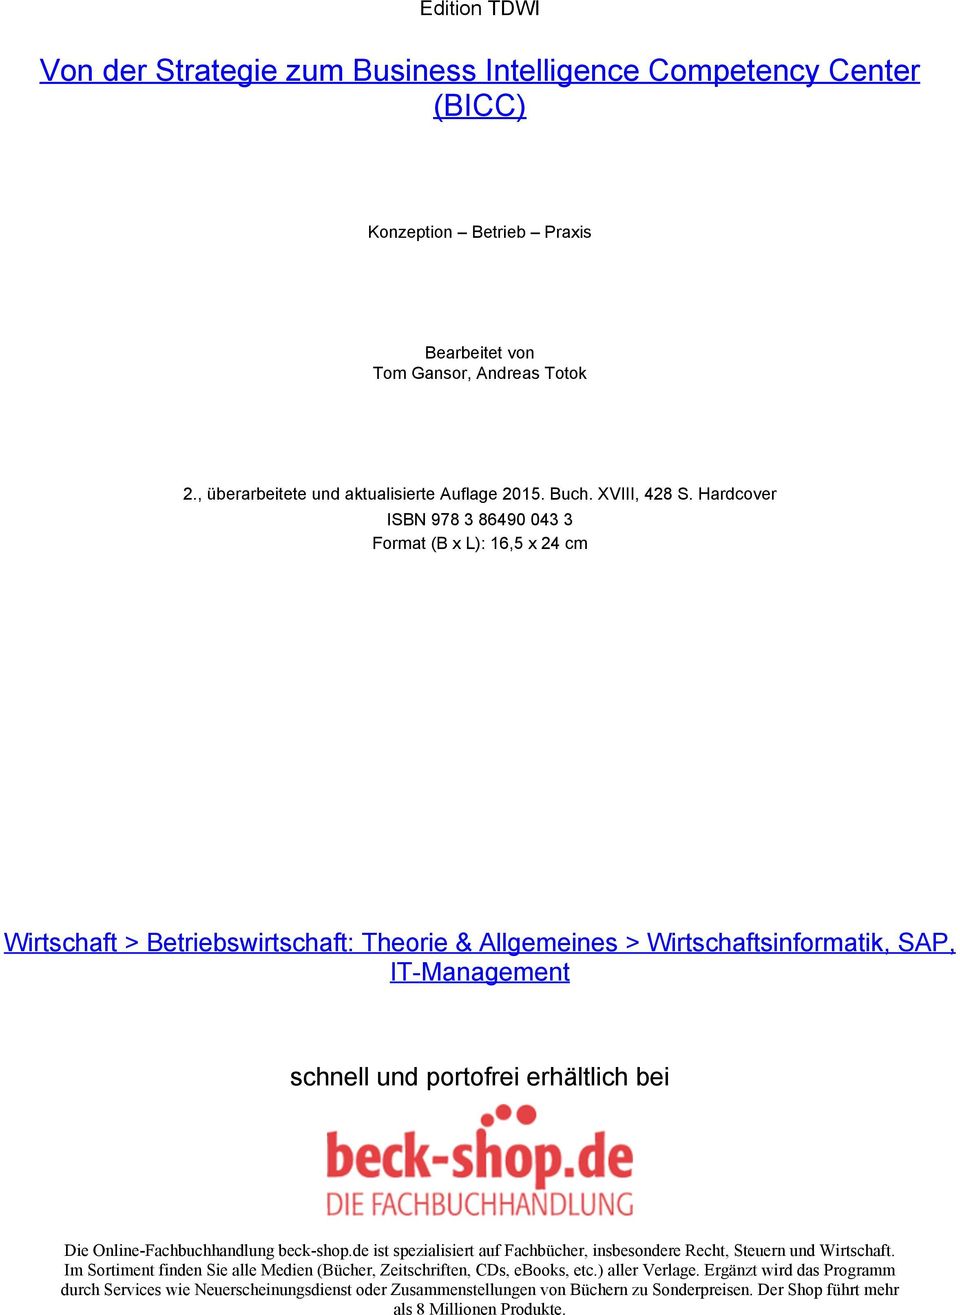 Hardcover ISBN 978 3 86490 043 3 Format (B x L): 16,5 x 24 cm Wirtschaft > Betriebswirtschaft: Theorie & Allgemeines > Wirtschaftsinformatik, SAP, IT-Management schnell und portofrei erhältlich bei